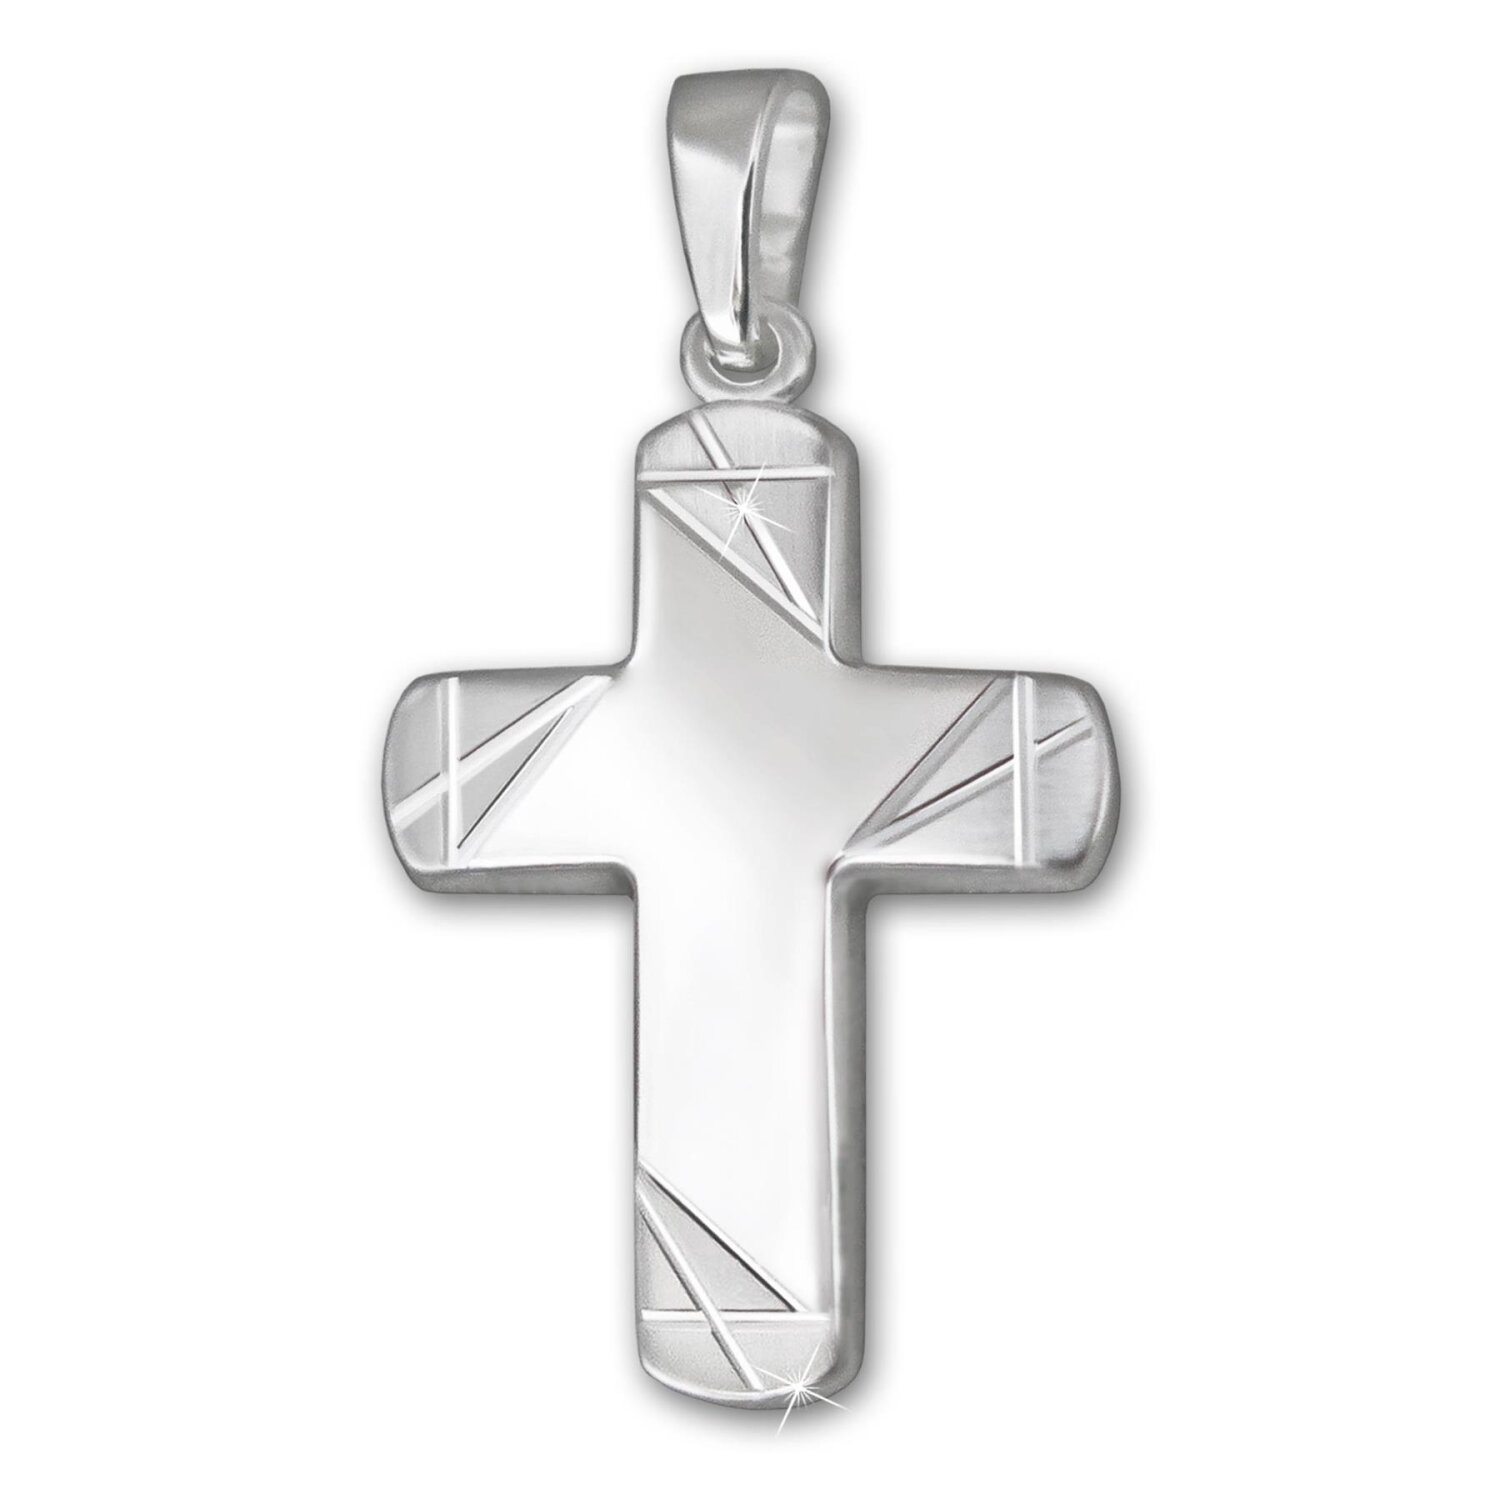 Silbernes Kreuz 20 mm breite Balken Enden matt verziert mit Linien Echt Silber 925